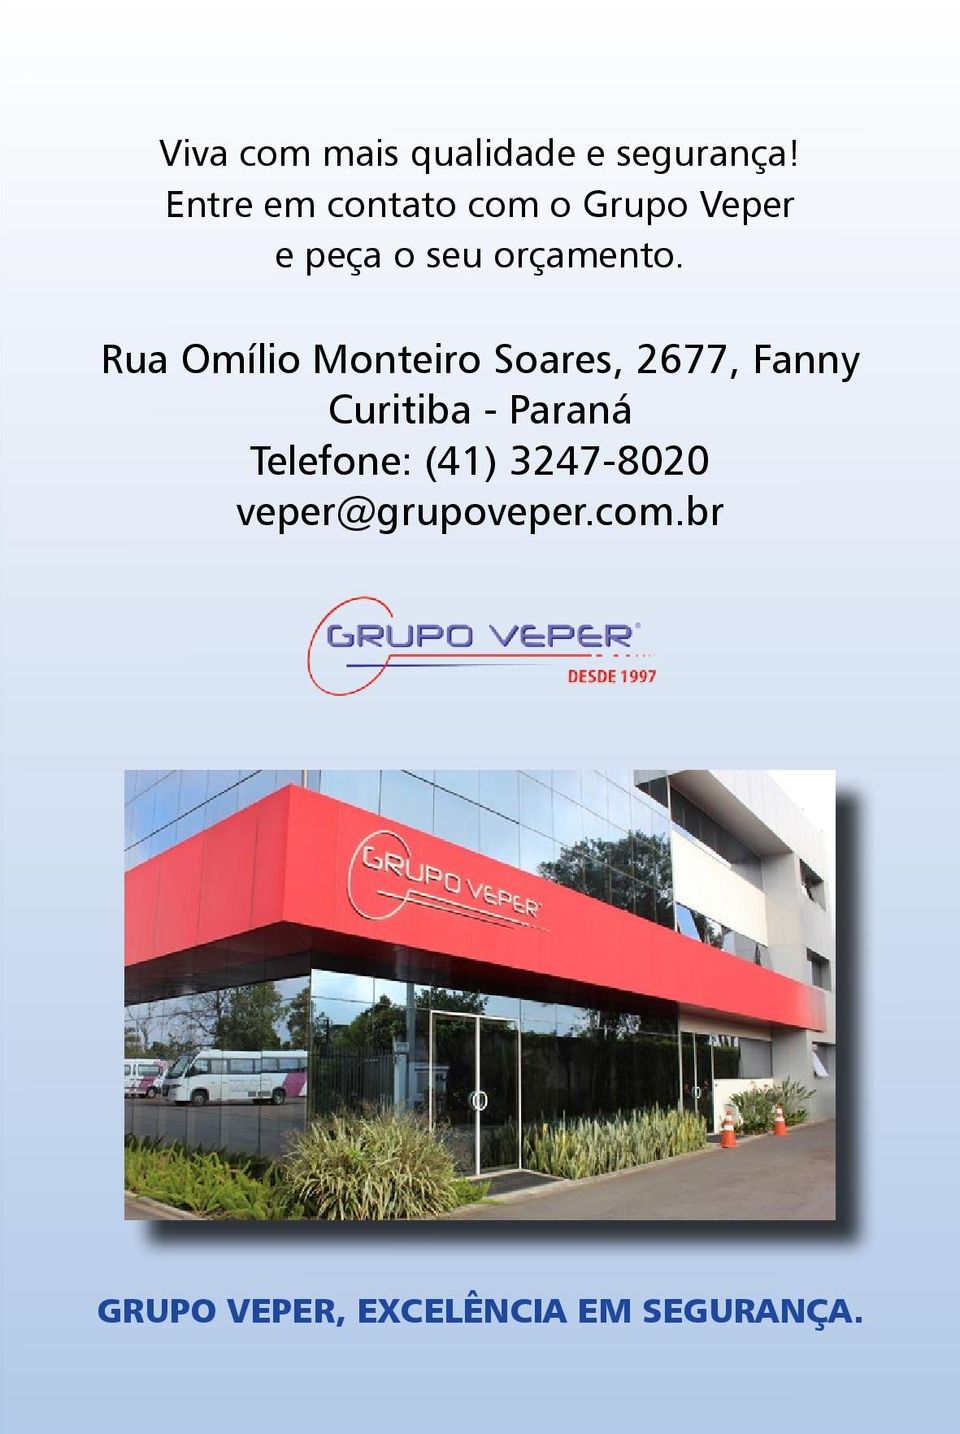 Rua Omílio Monteiro Soares, 2677, Fanny Curitiba - Paraná